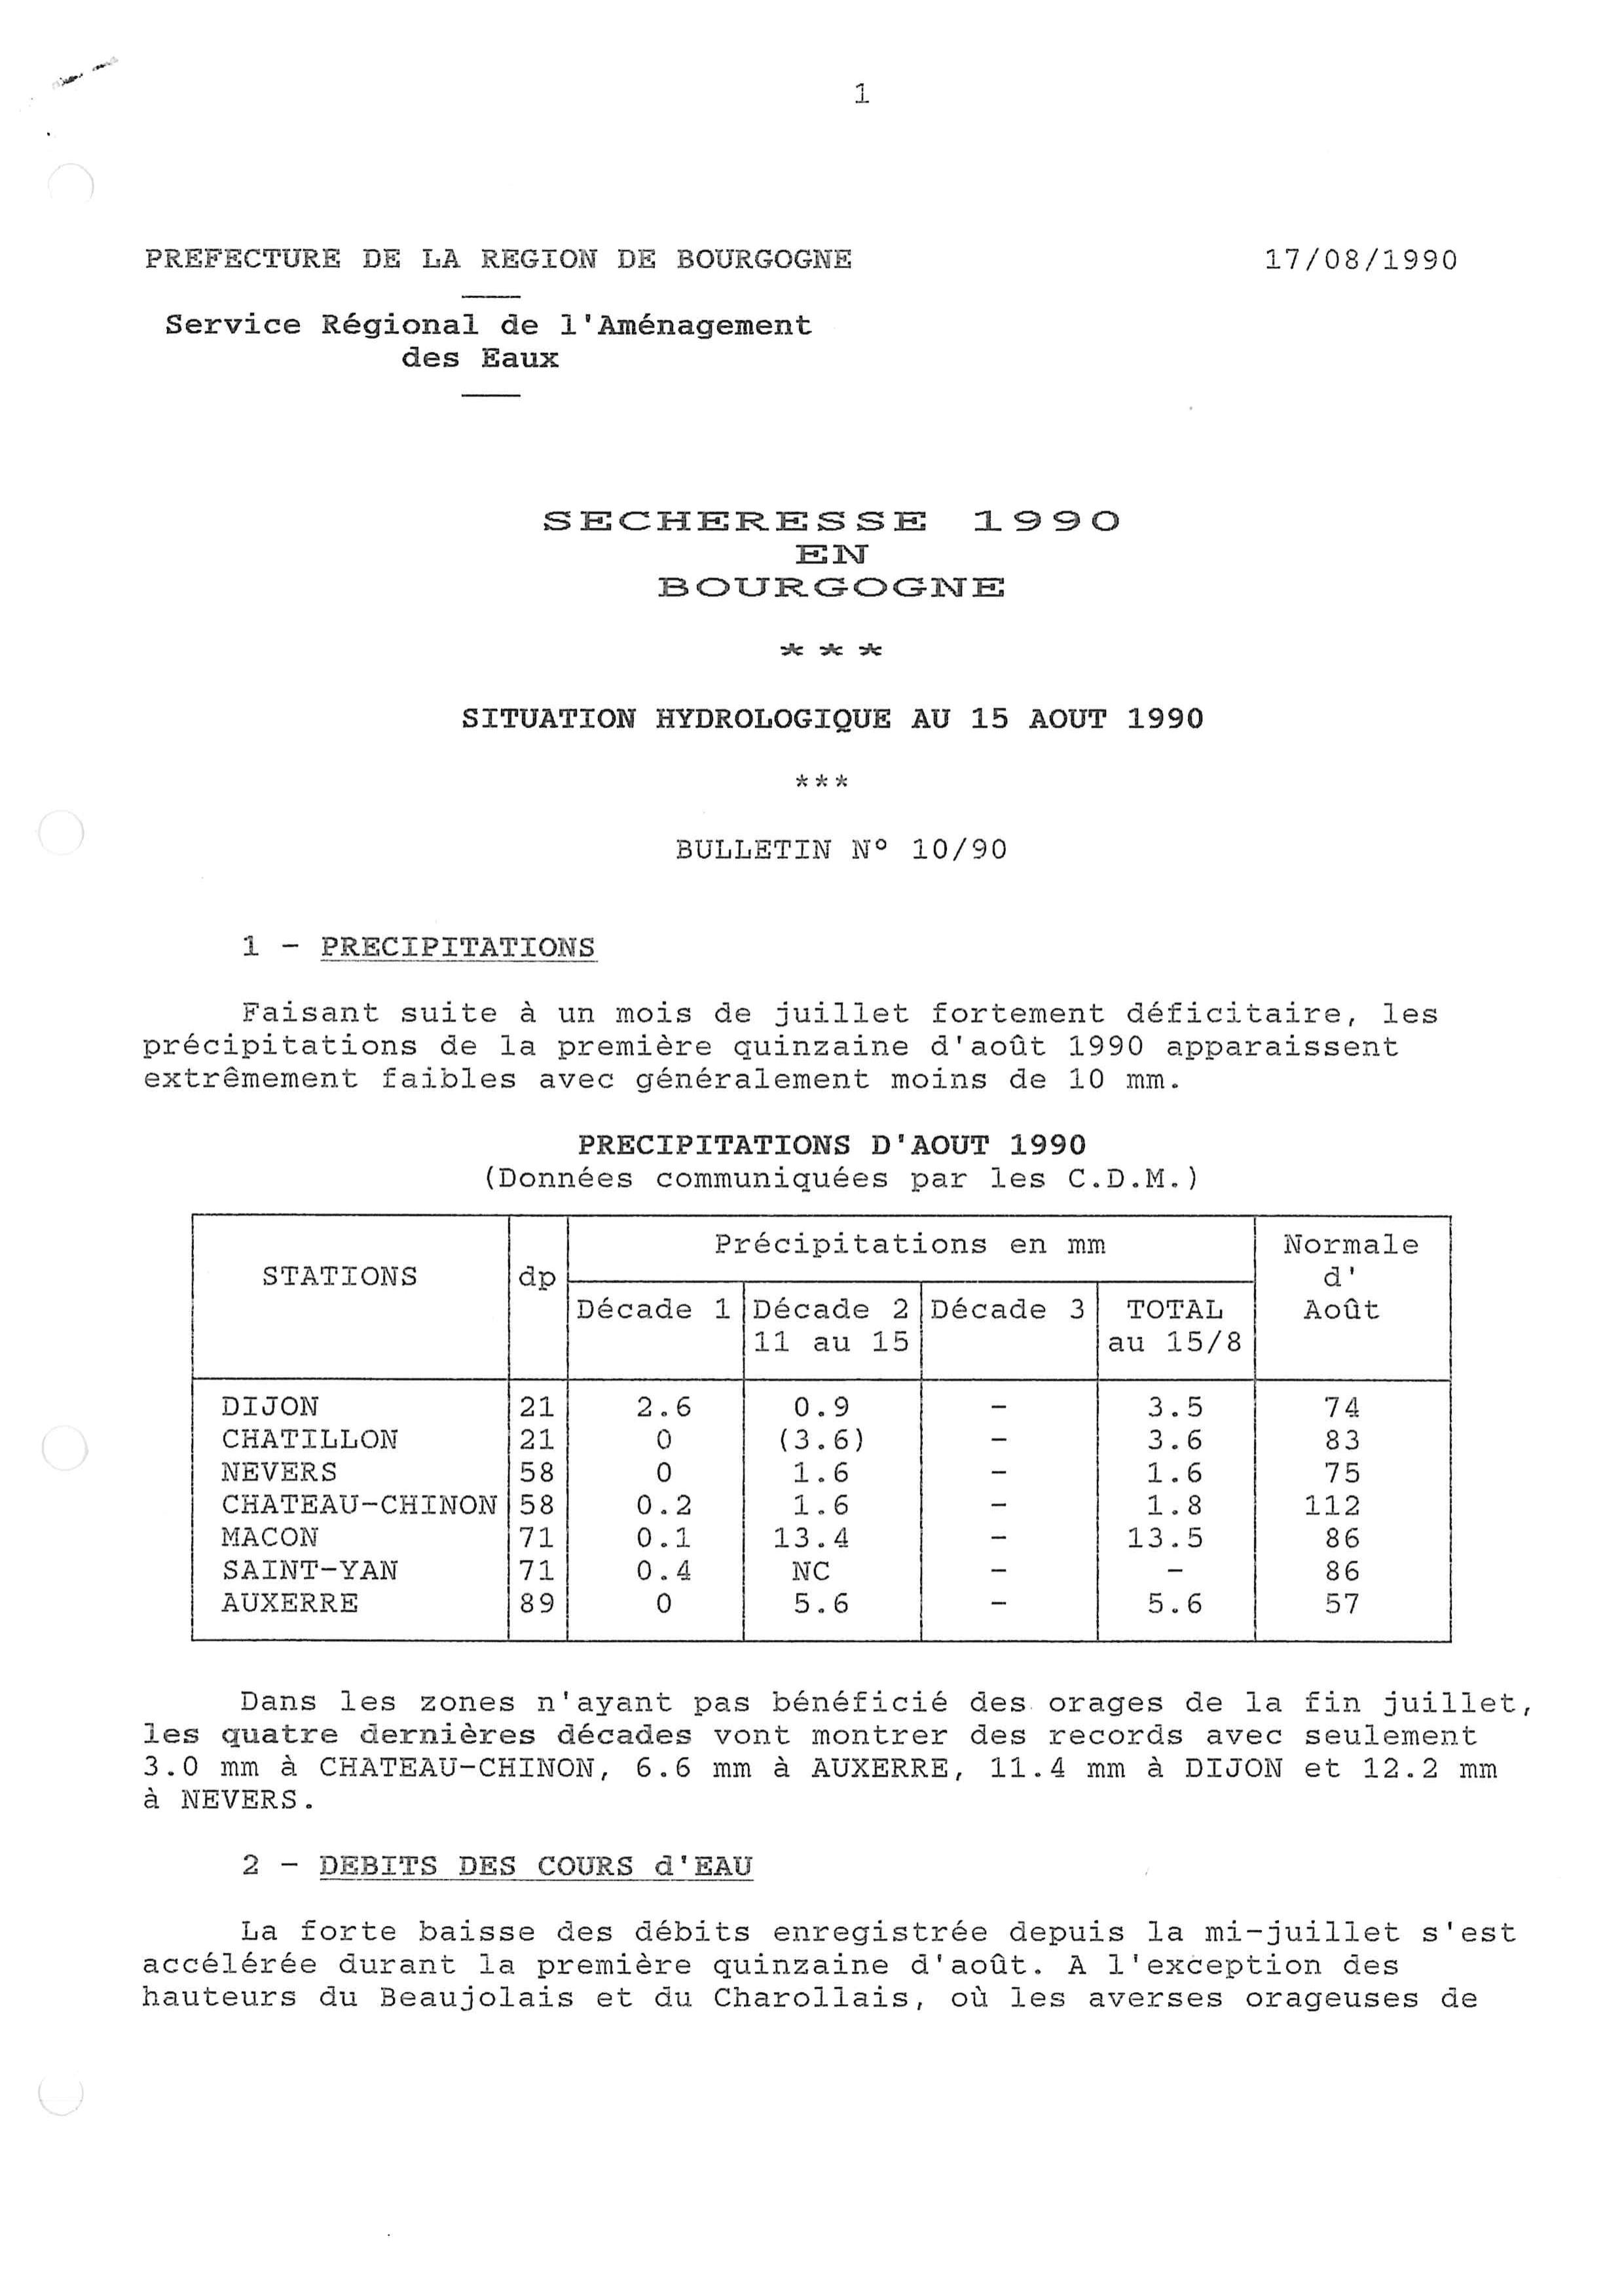 Bulletin hydrologique de la première quinzaine d'août 1990